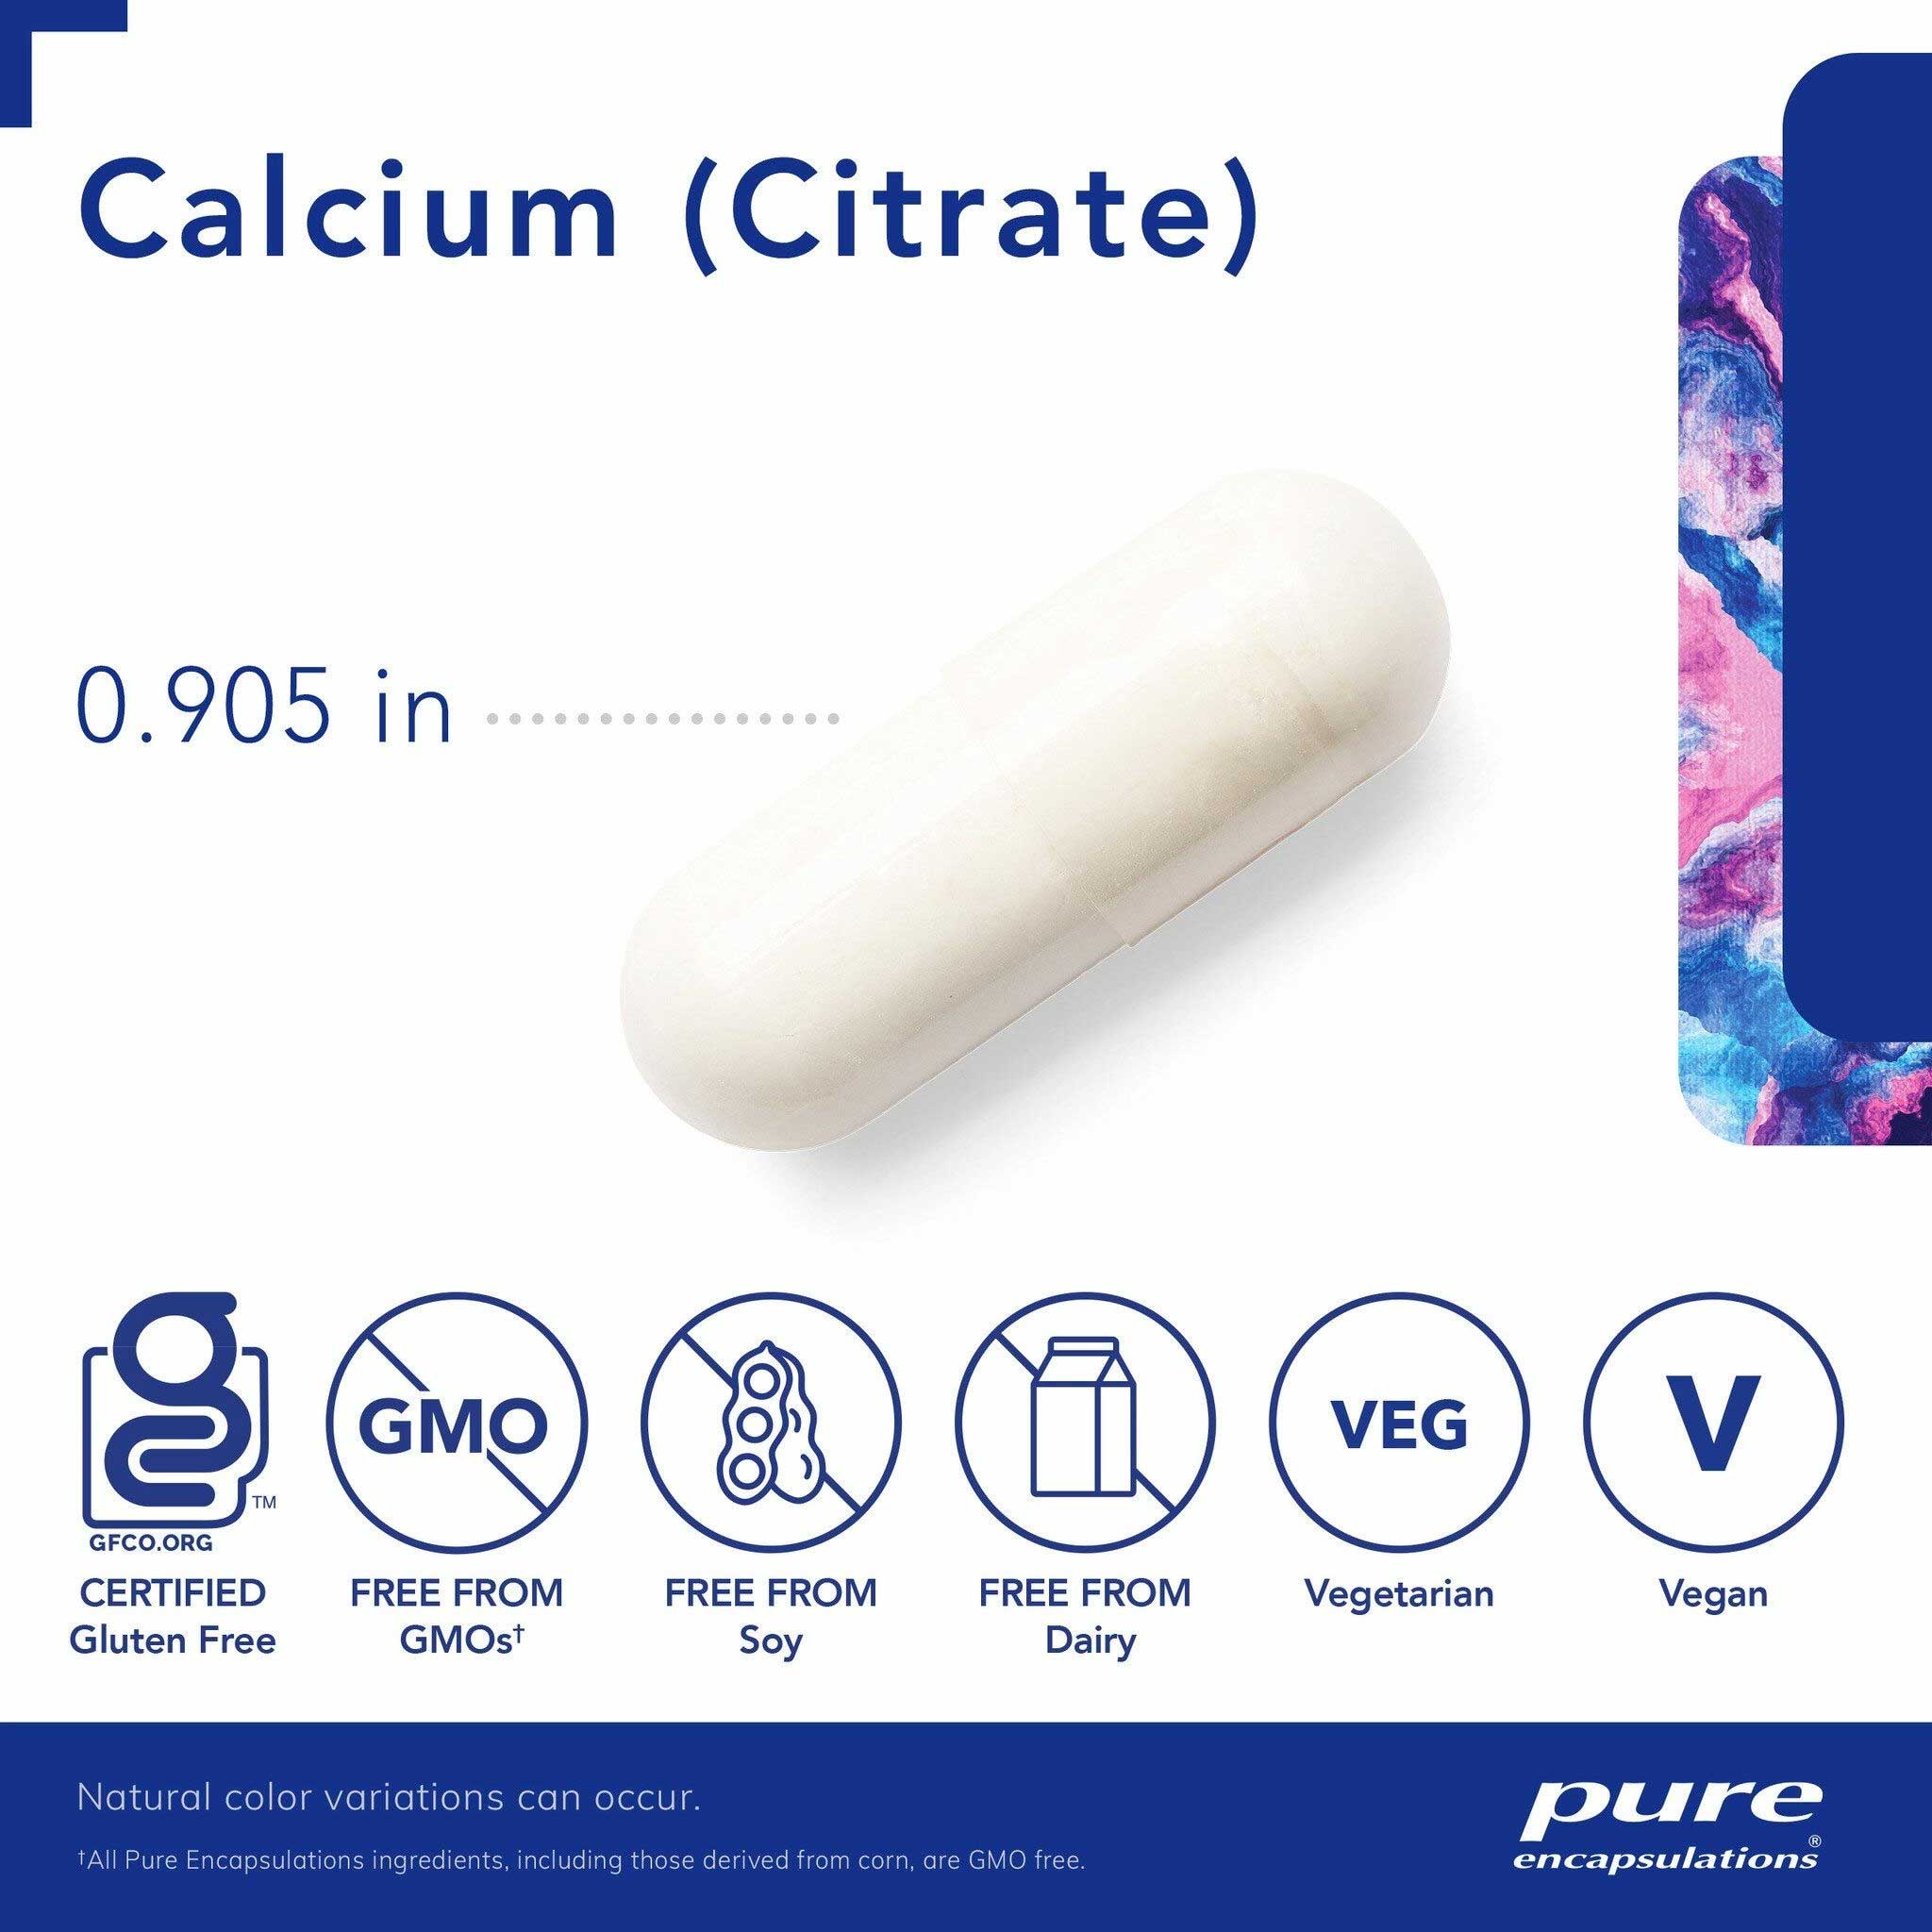 Pure Encapsulations Calcium (Citrate) Capsules